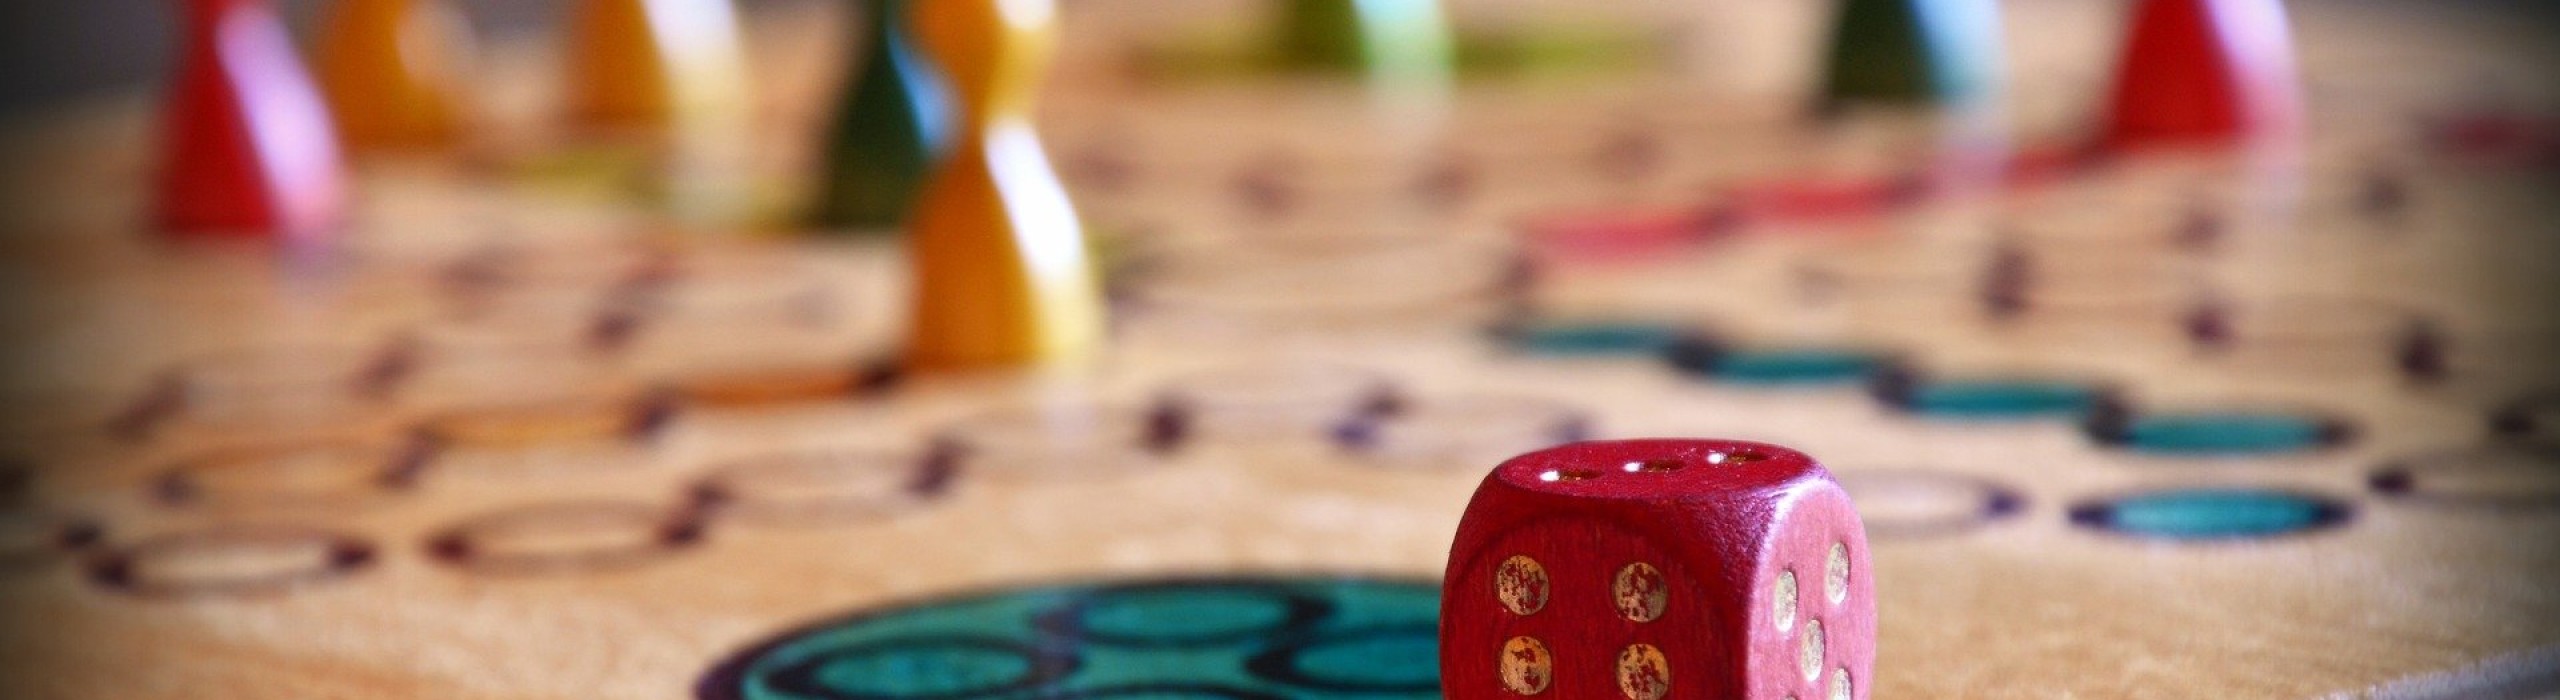 Brettspiel, im Vordergrund der Würfel, im Hintergrund Spielfiguren